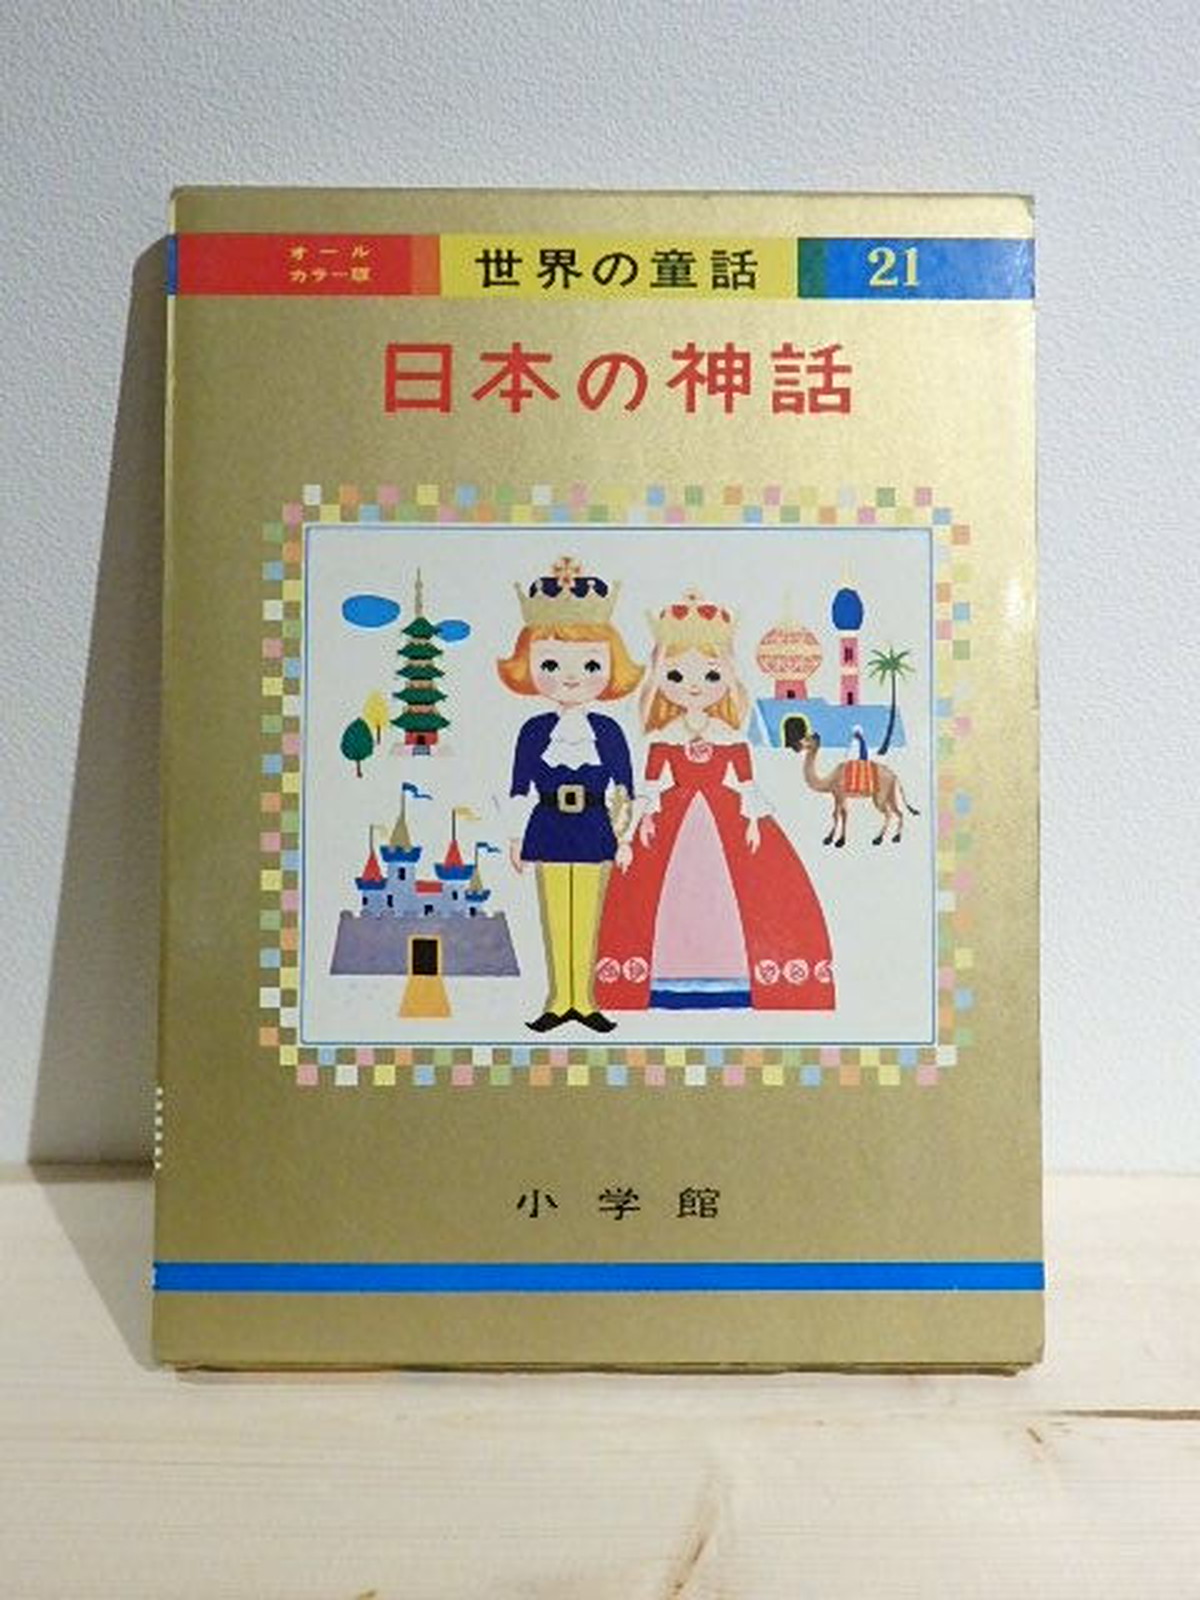 オールカラー版世界の童話21 日本の神話 百年